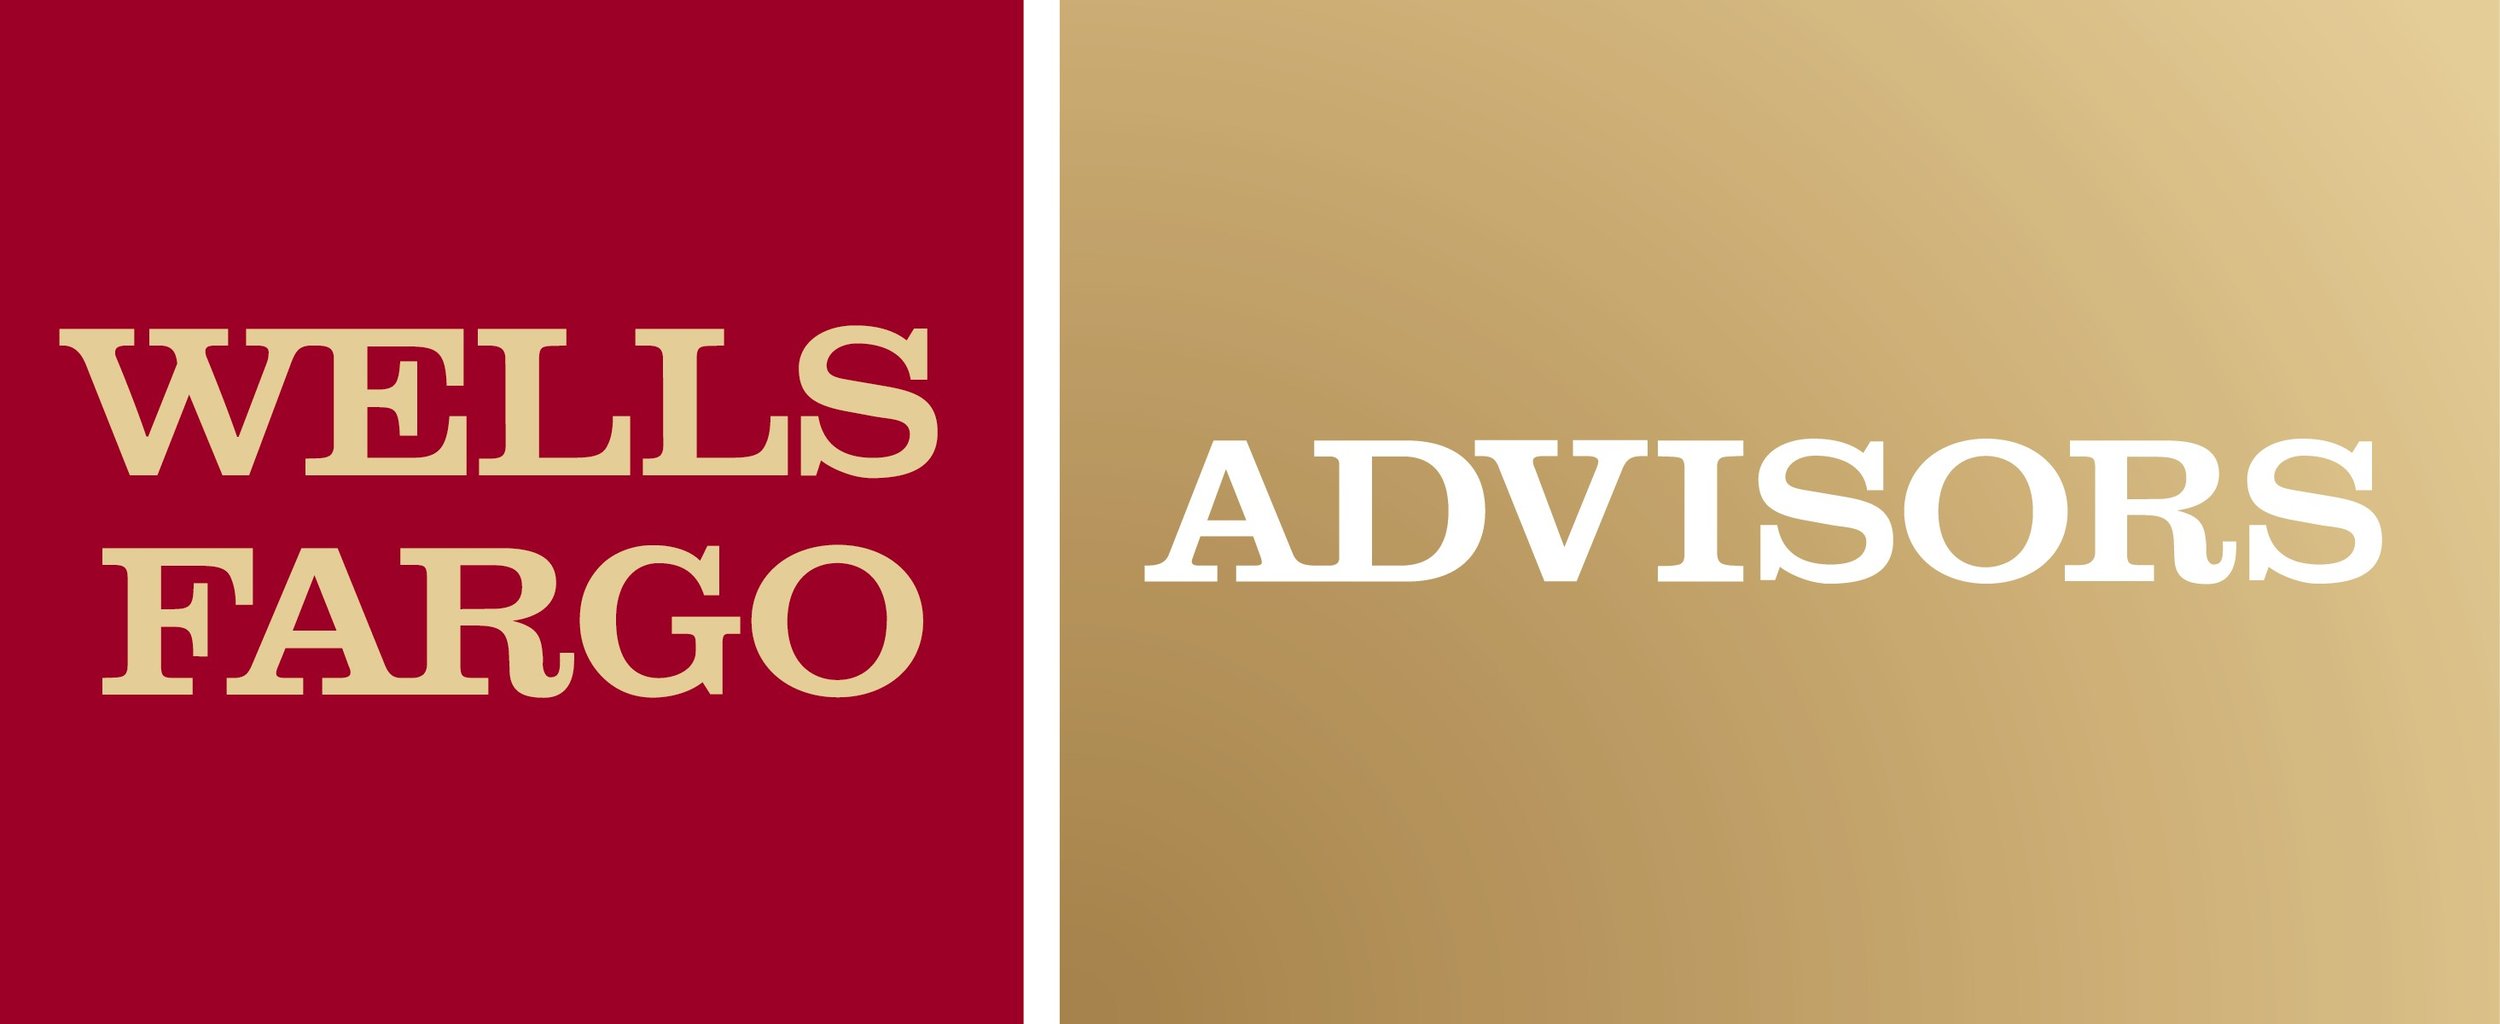 wells-fargo-advisors-logo-vector-wells-fargo-advisors-logo-2885.jpg